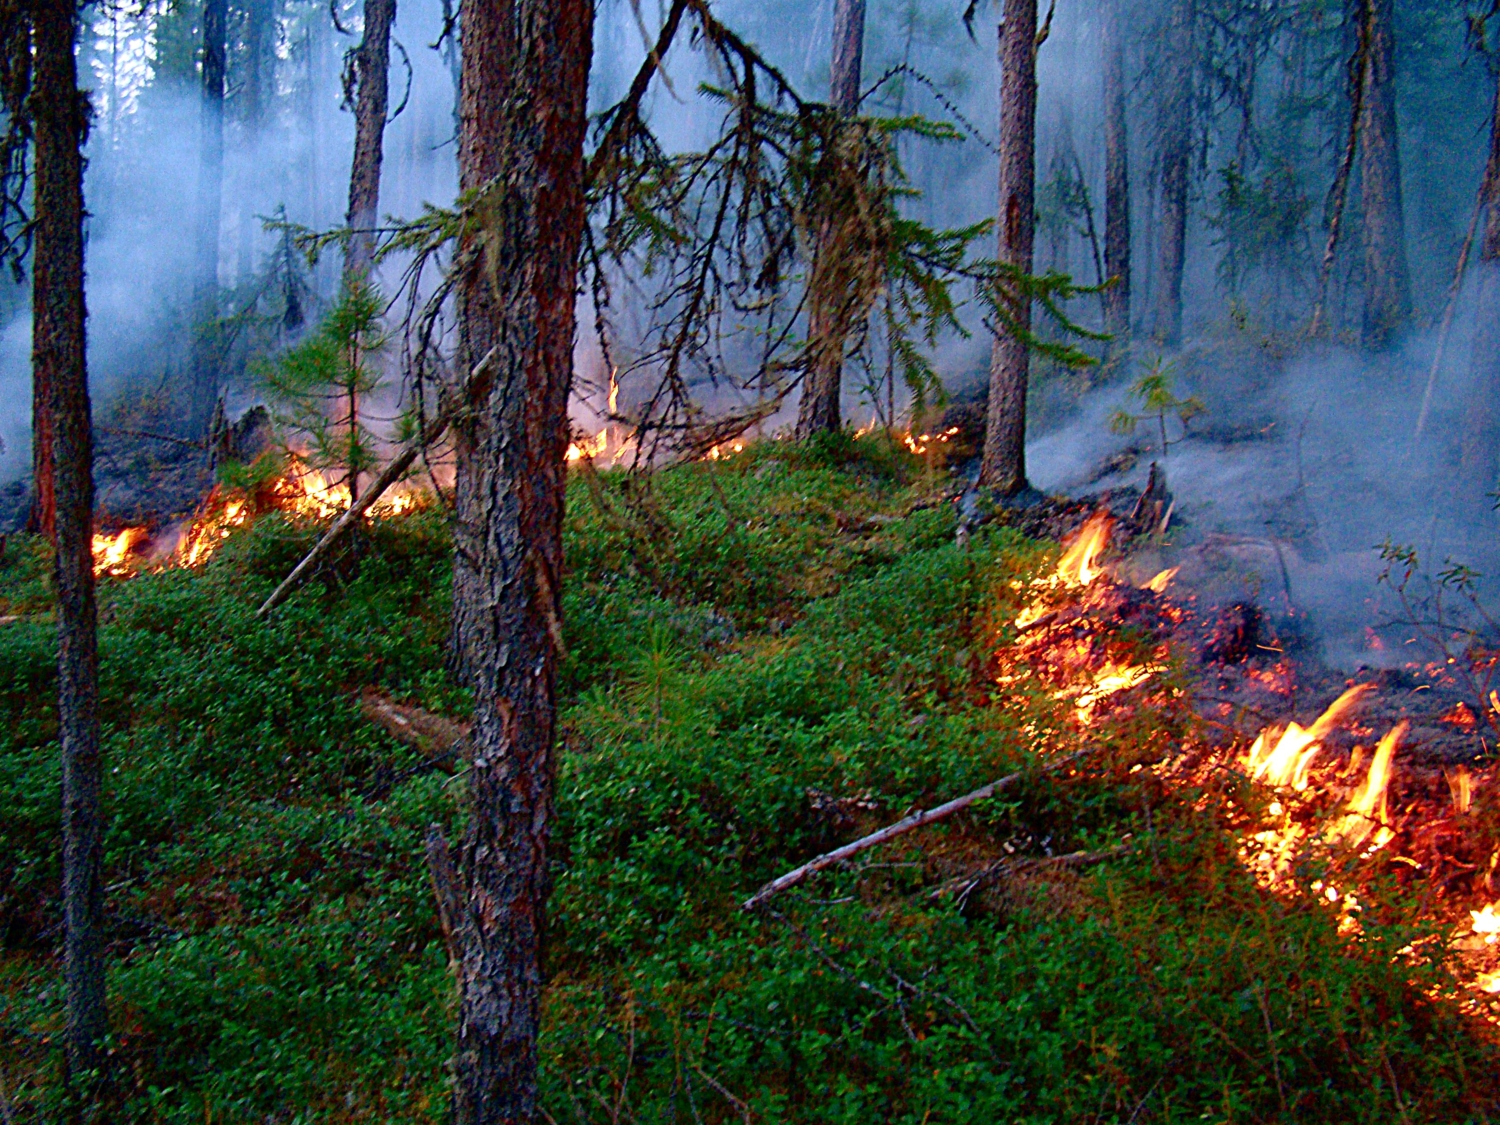 Информация о лесопожарной обстановке 25 июля на 9:00: за последние сутки площадь пожаров в Карелии превысила 11 га

